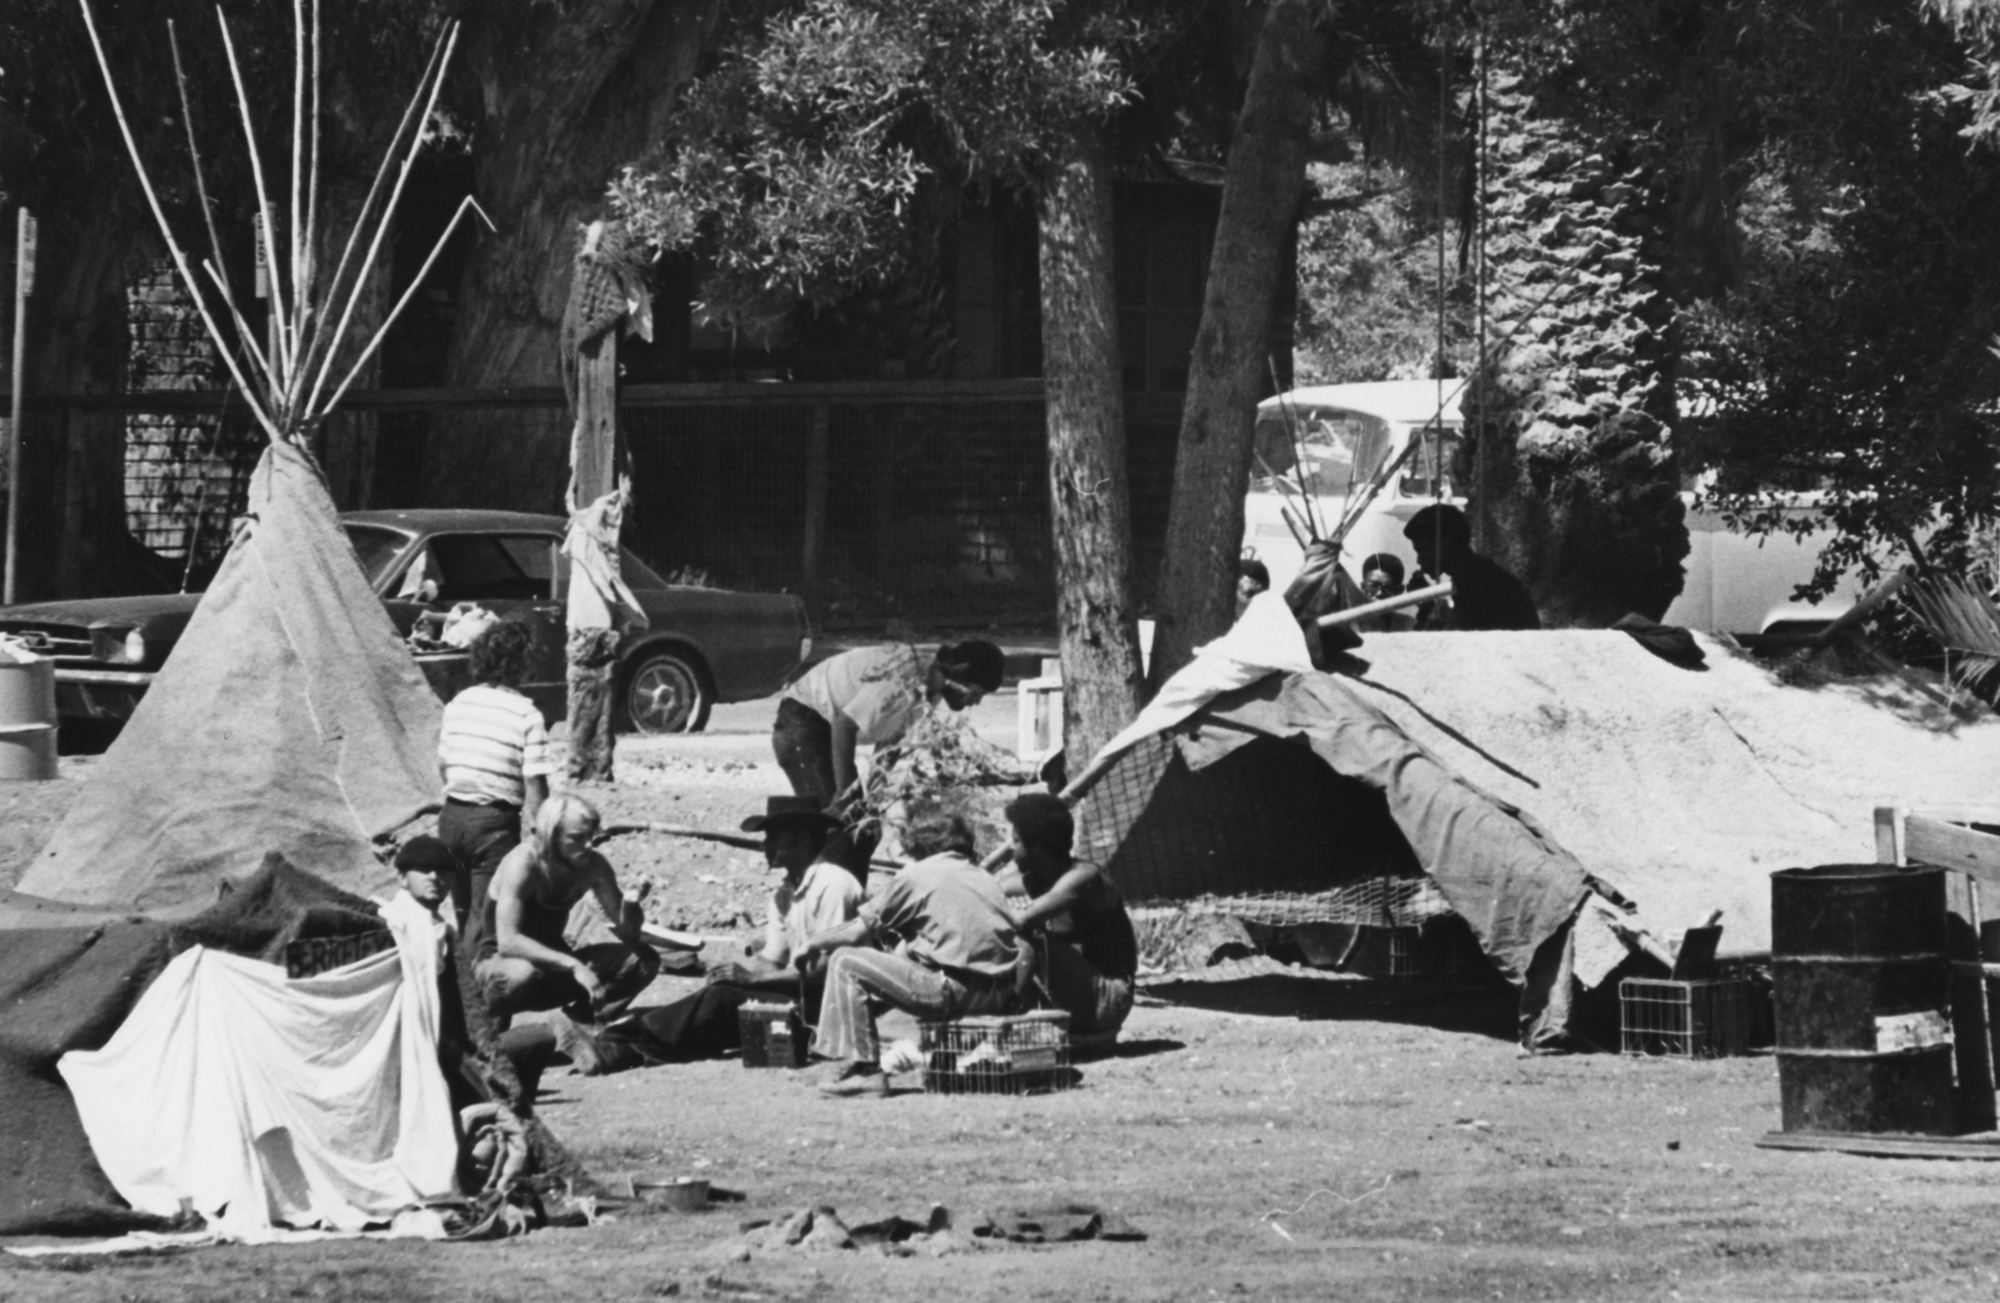 People's Park in Berkeley on July 28, 1972.